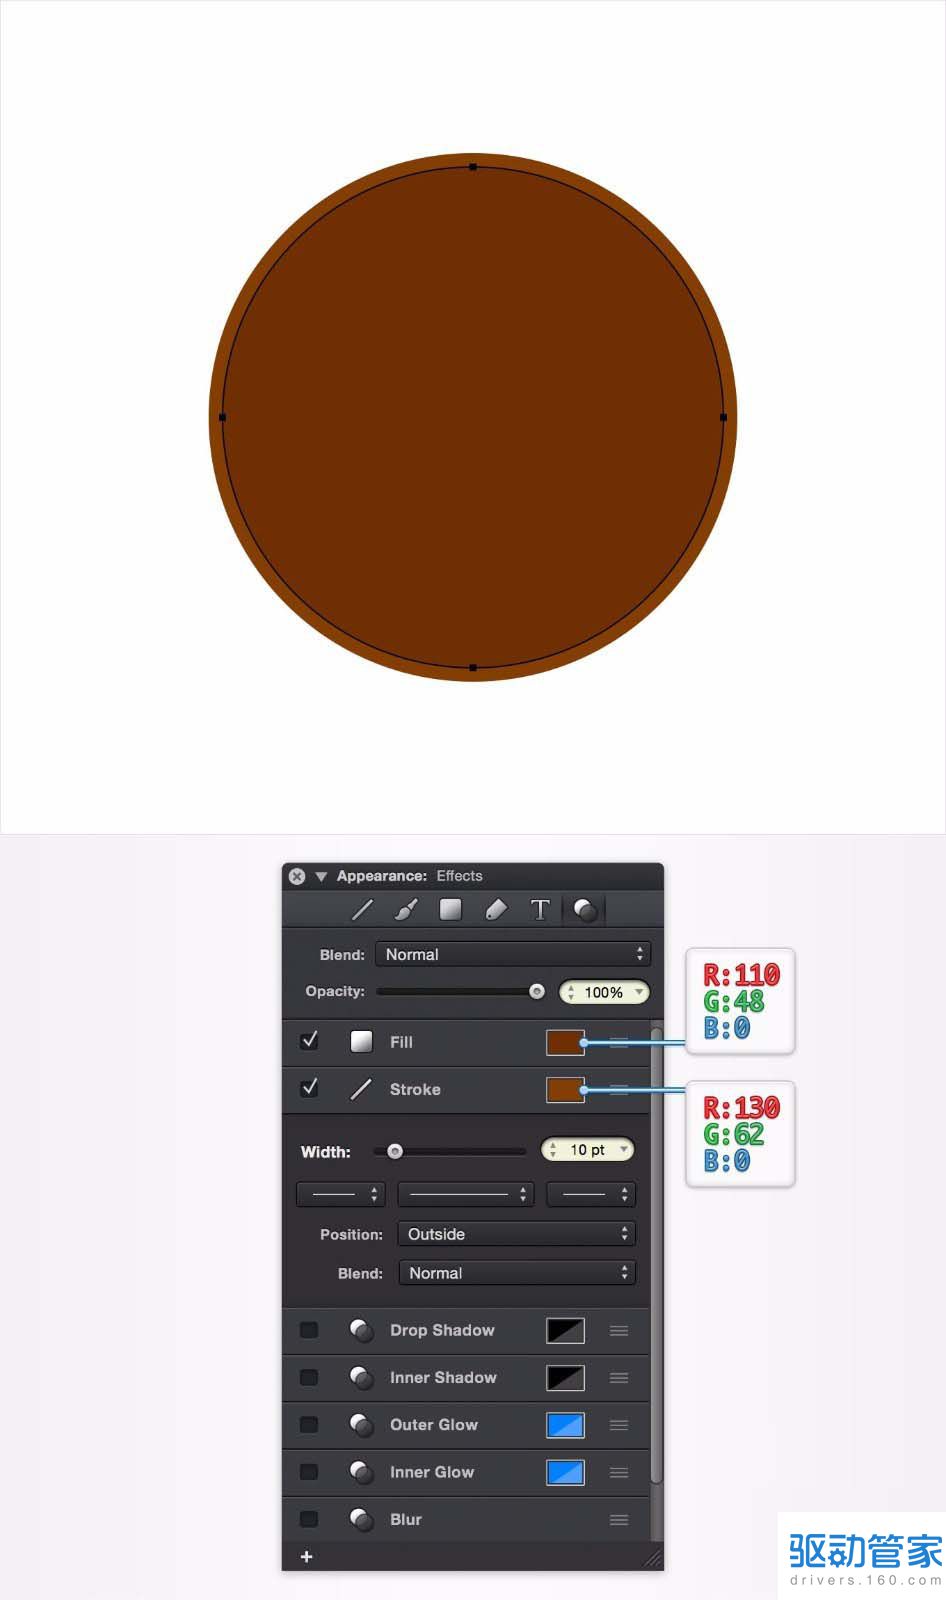 怎么用graphic设计软件设计出带曲线文字的咖啡厅标志